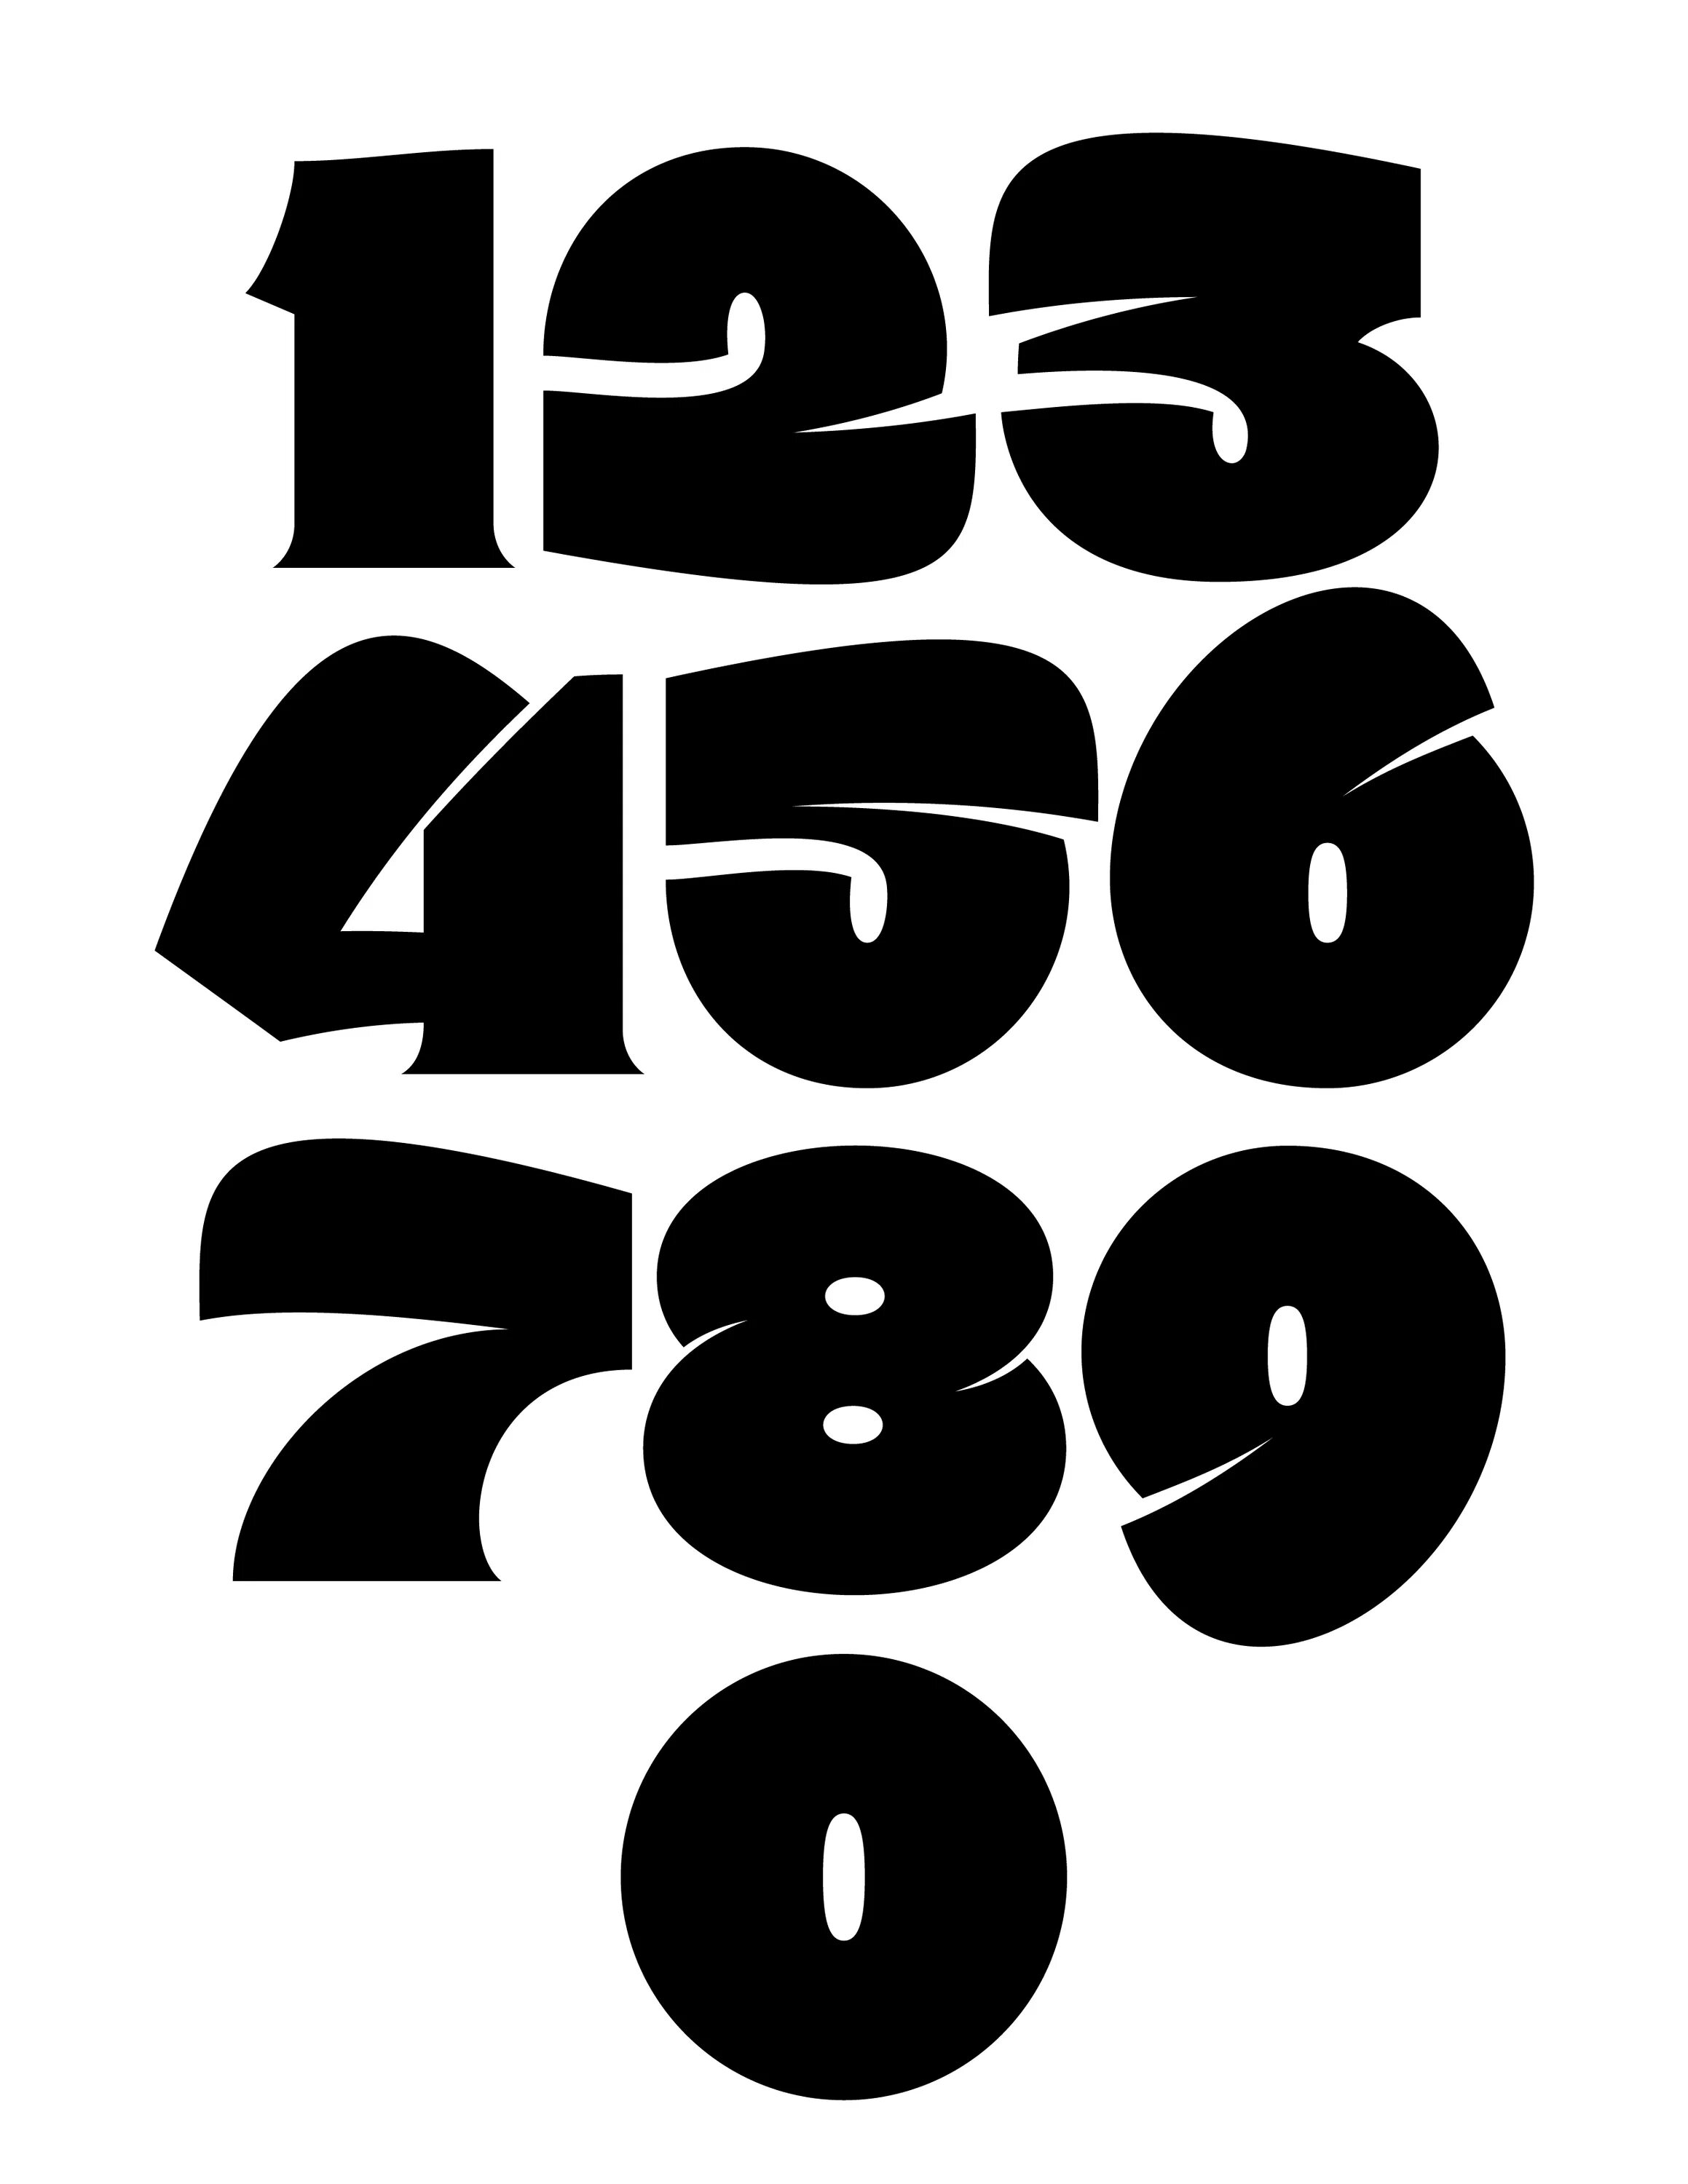 Numbers fonts. Шрифты цифр. Дизайнерские шрифты цифры. Граффити шрифты цифры. Красивые цифры шрифт.